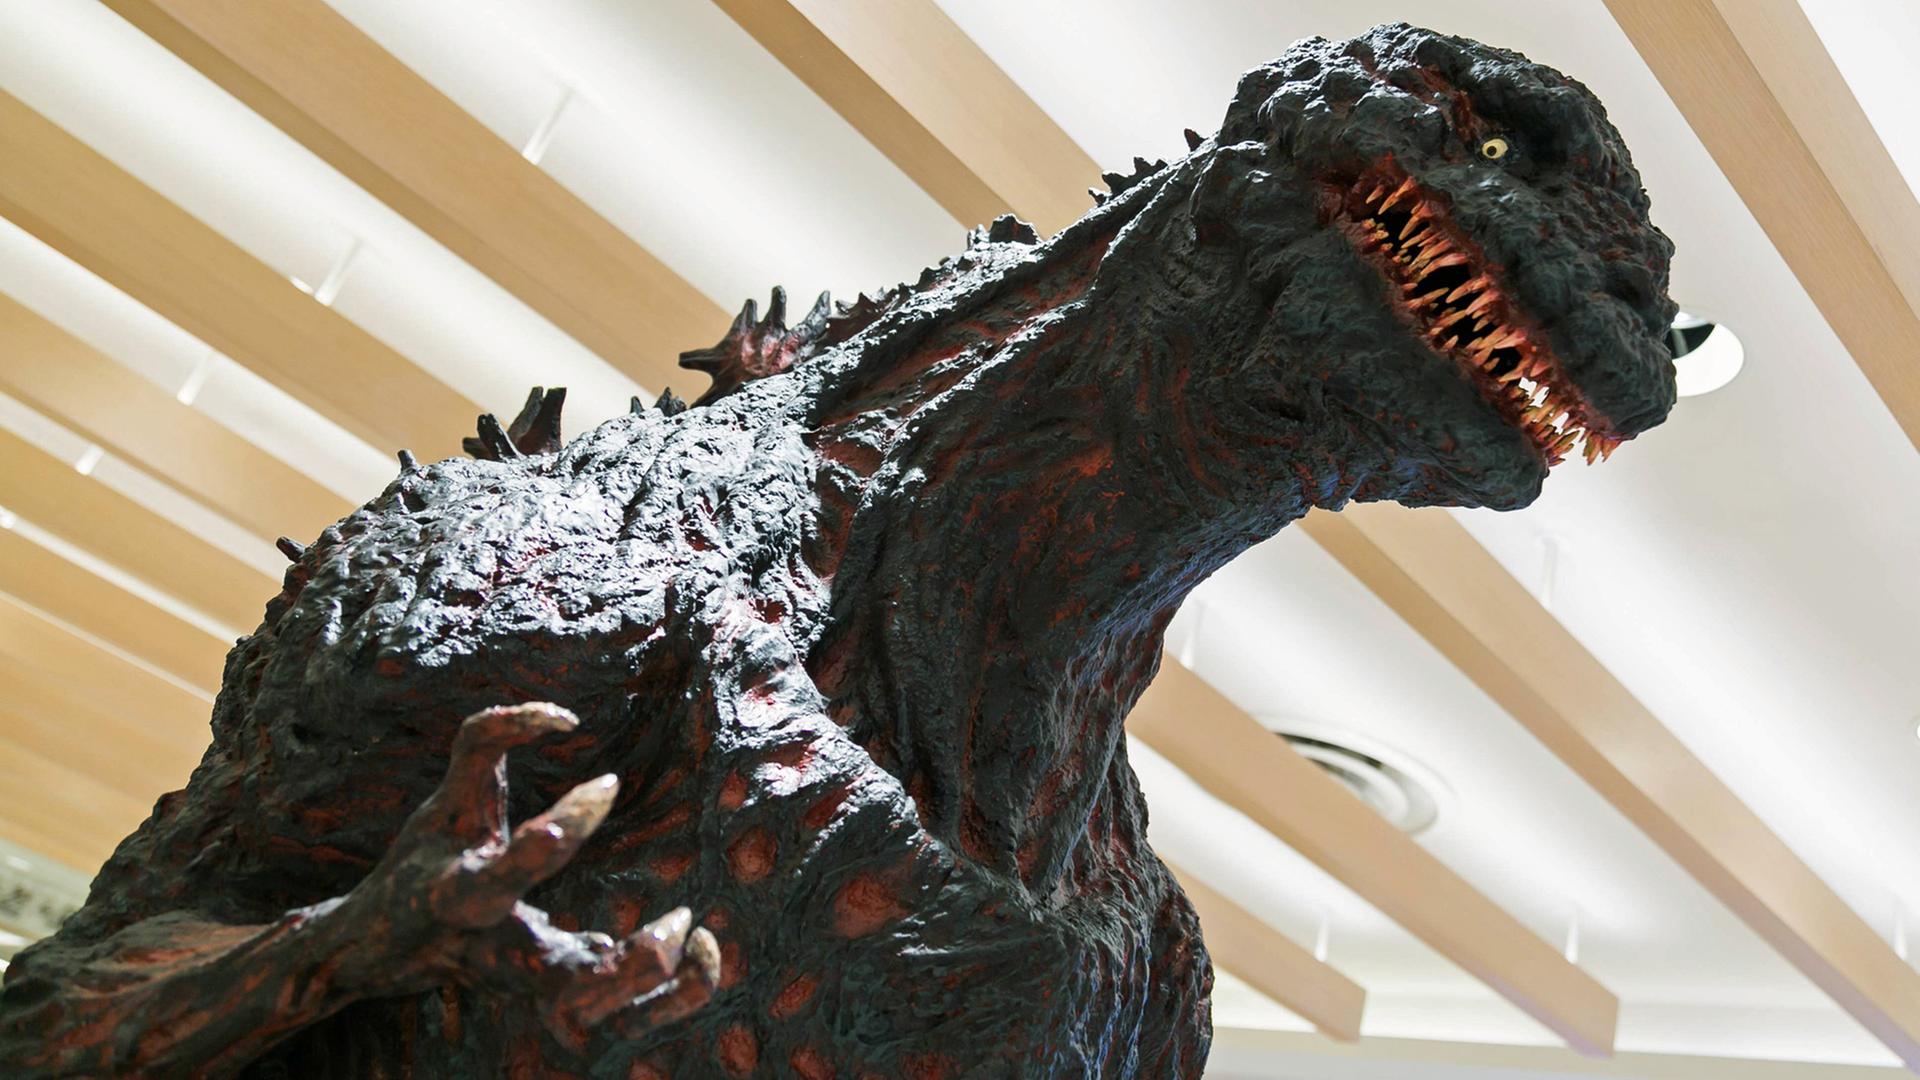 Der "Shin Godzilla" als Werbefigur in einer Shopping Mall der japanischen Hauptstadt Tokio